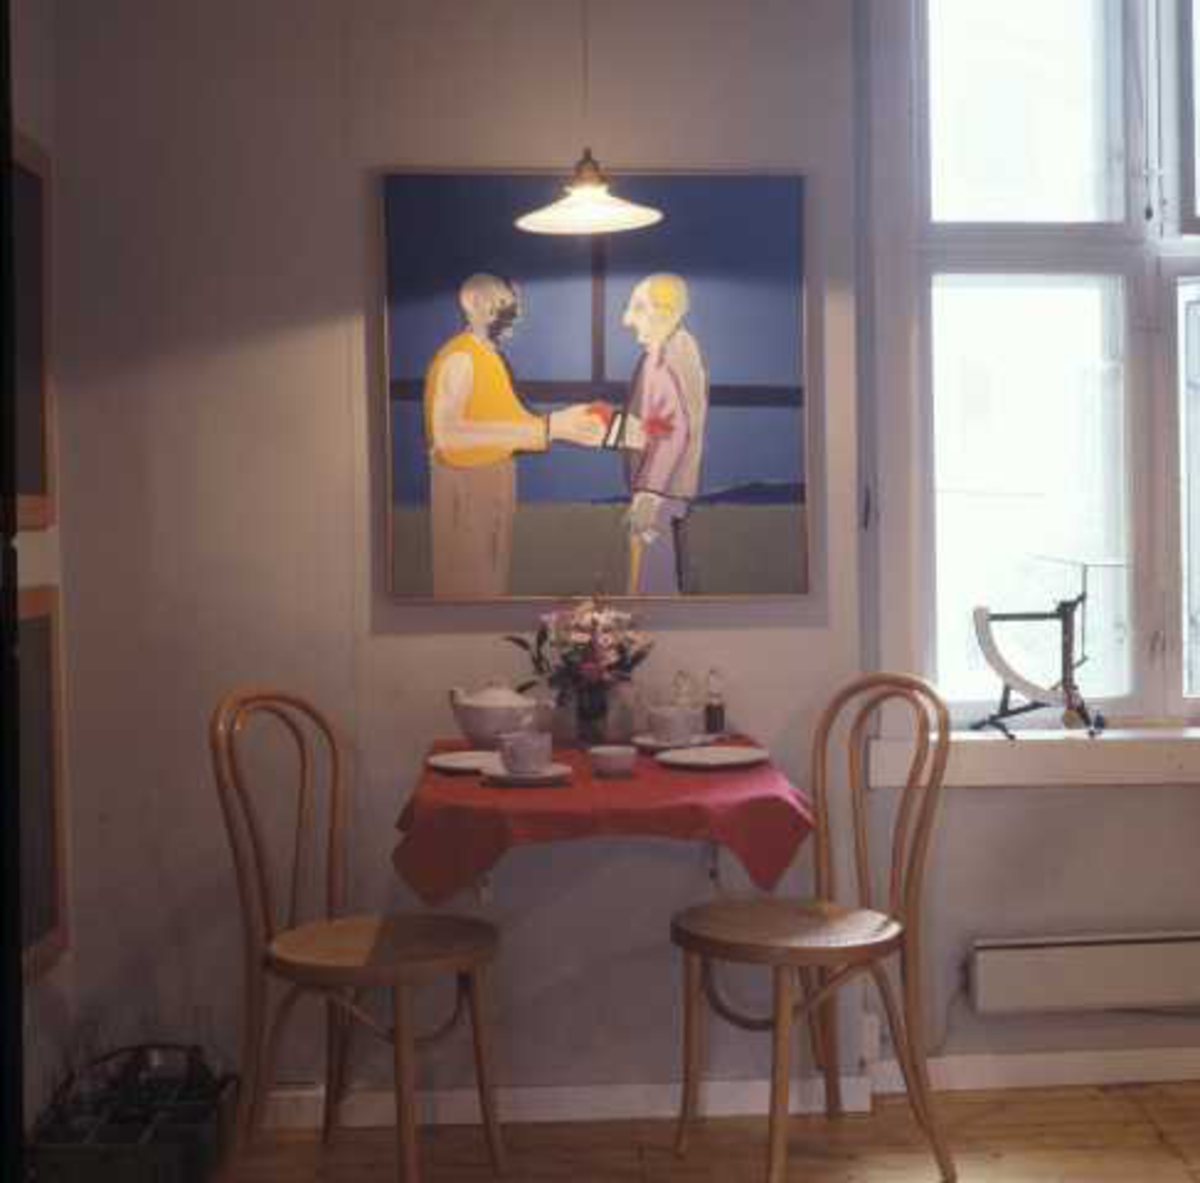 Kjøkken i hjørneleiligheten i 2. etg. i Wessels gate 15, Oslo, 1984